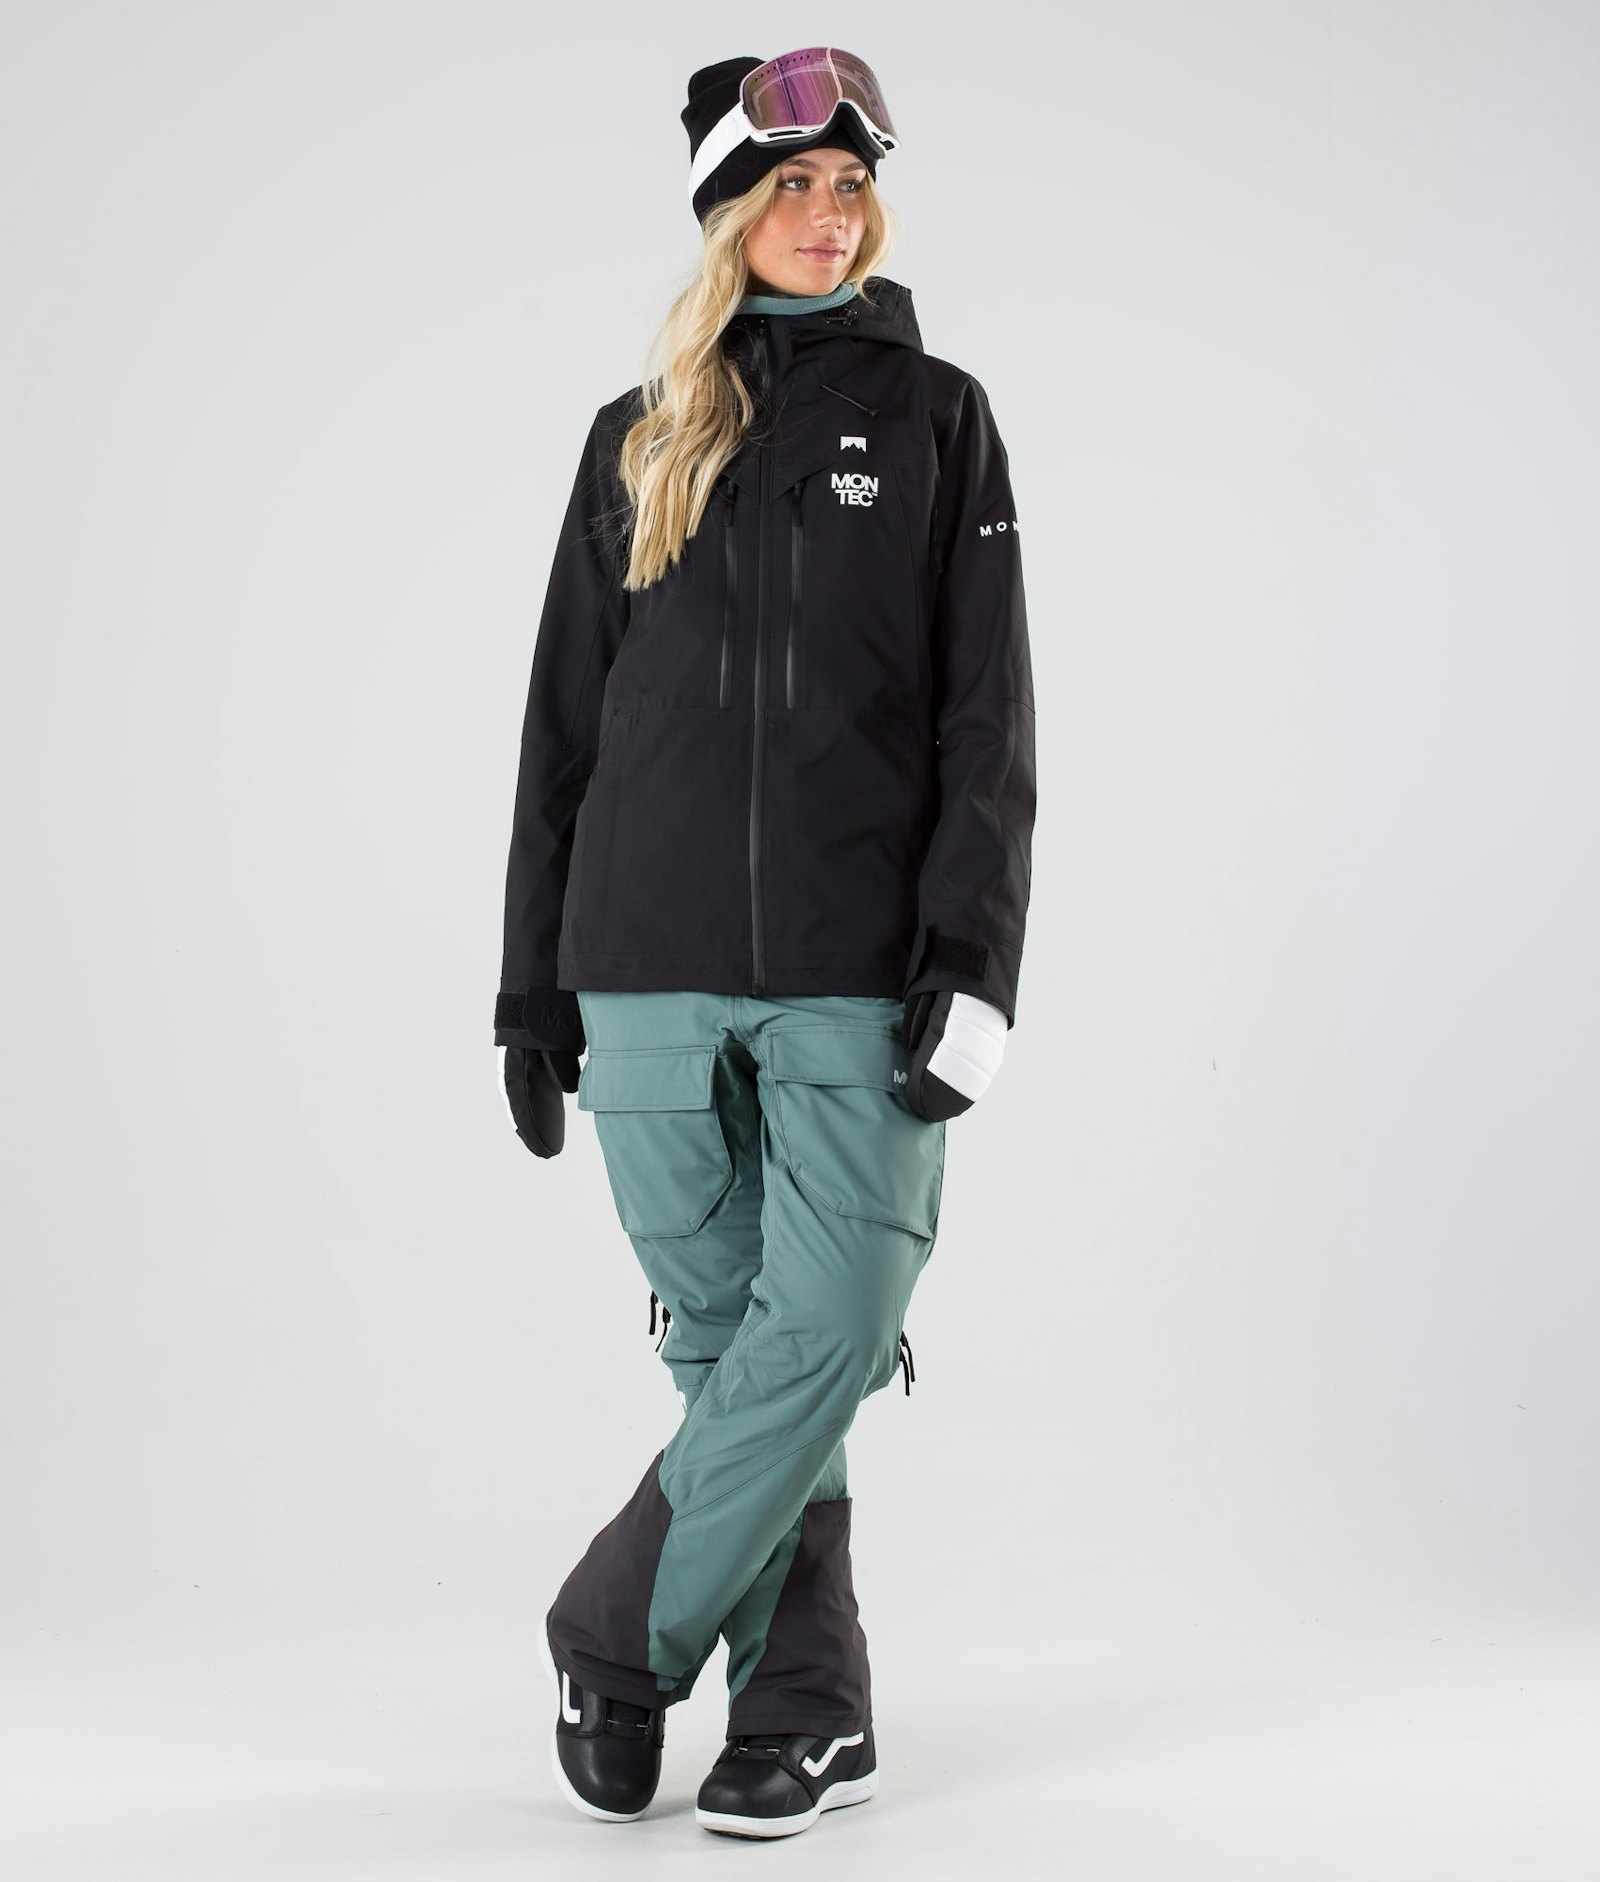 Moss W 2019 Snowboardjakke Dame Black